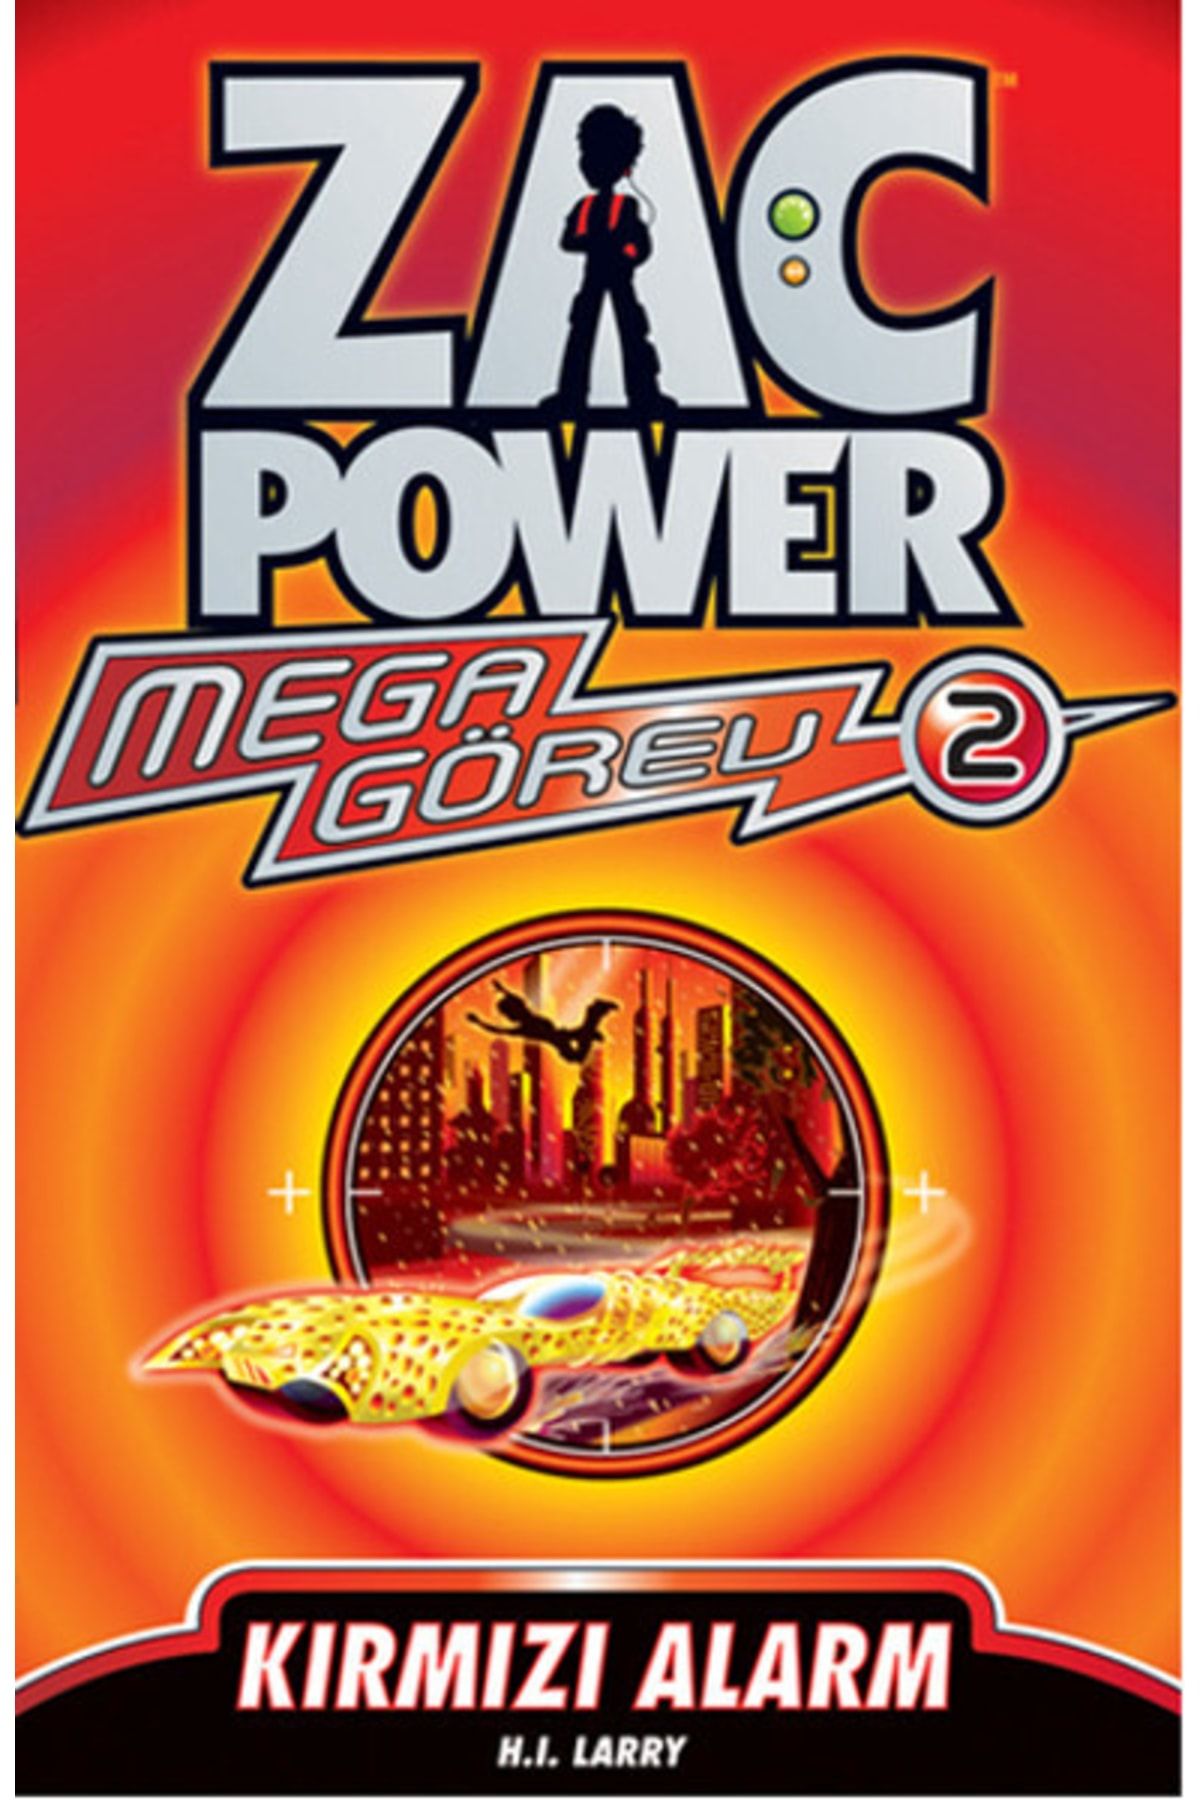 Caretta Çocuk Zac Power Mega Görev Serisi 2 Kırmızı Alarm